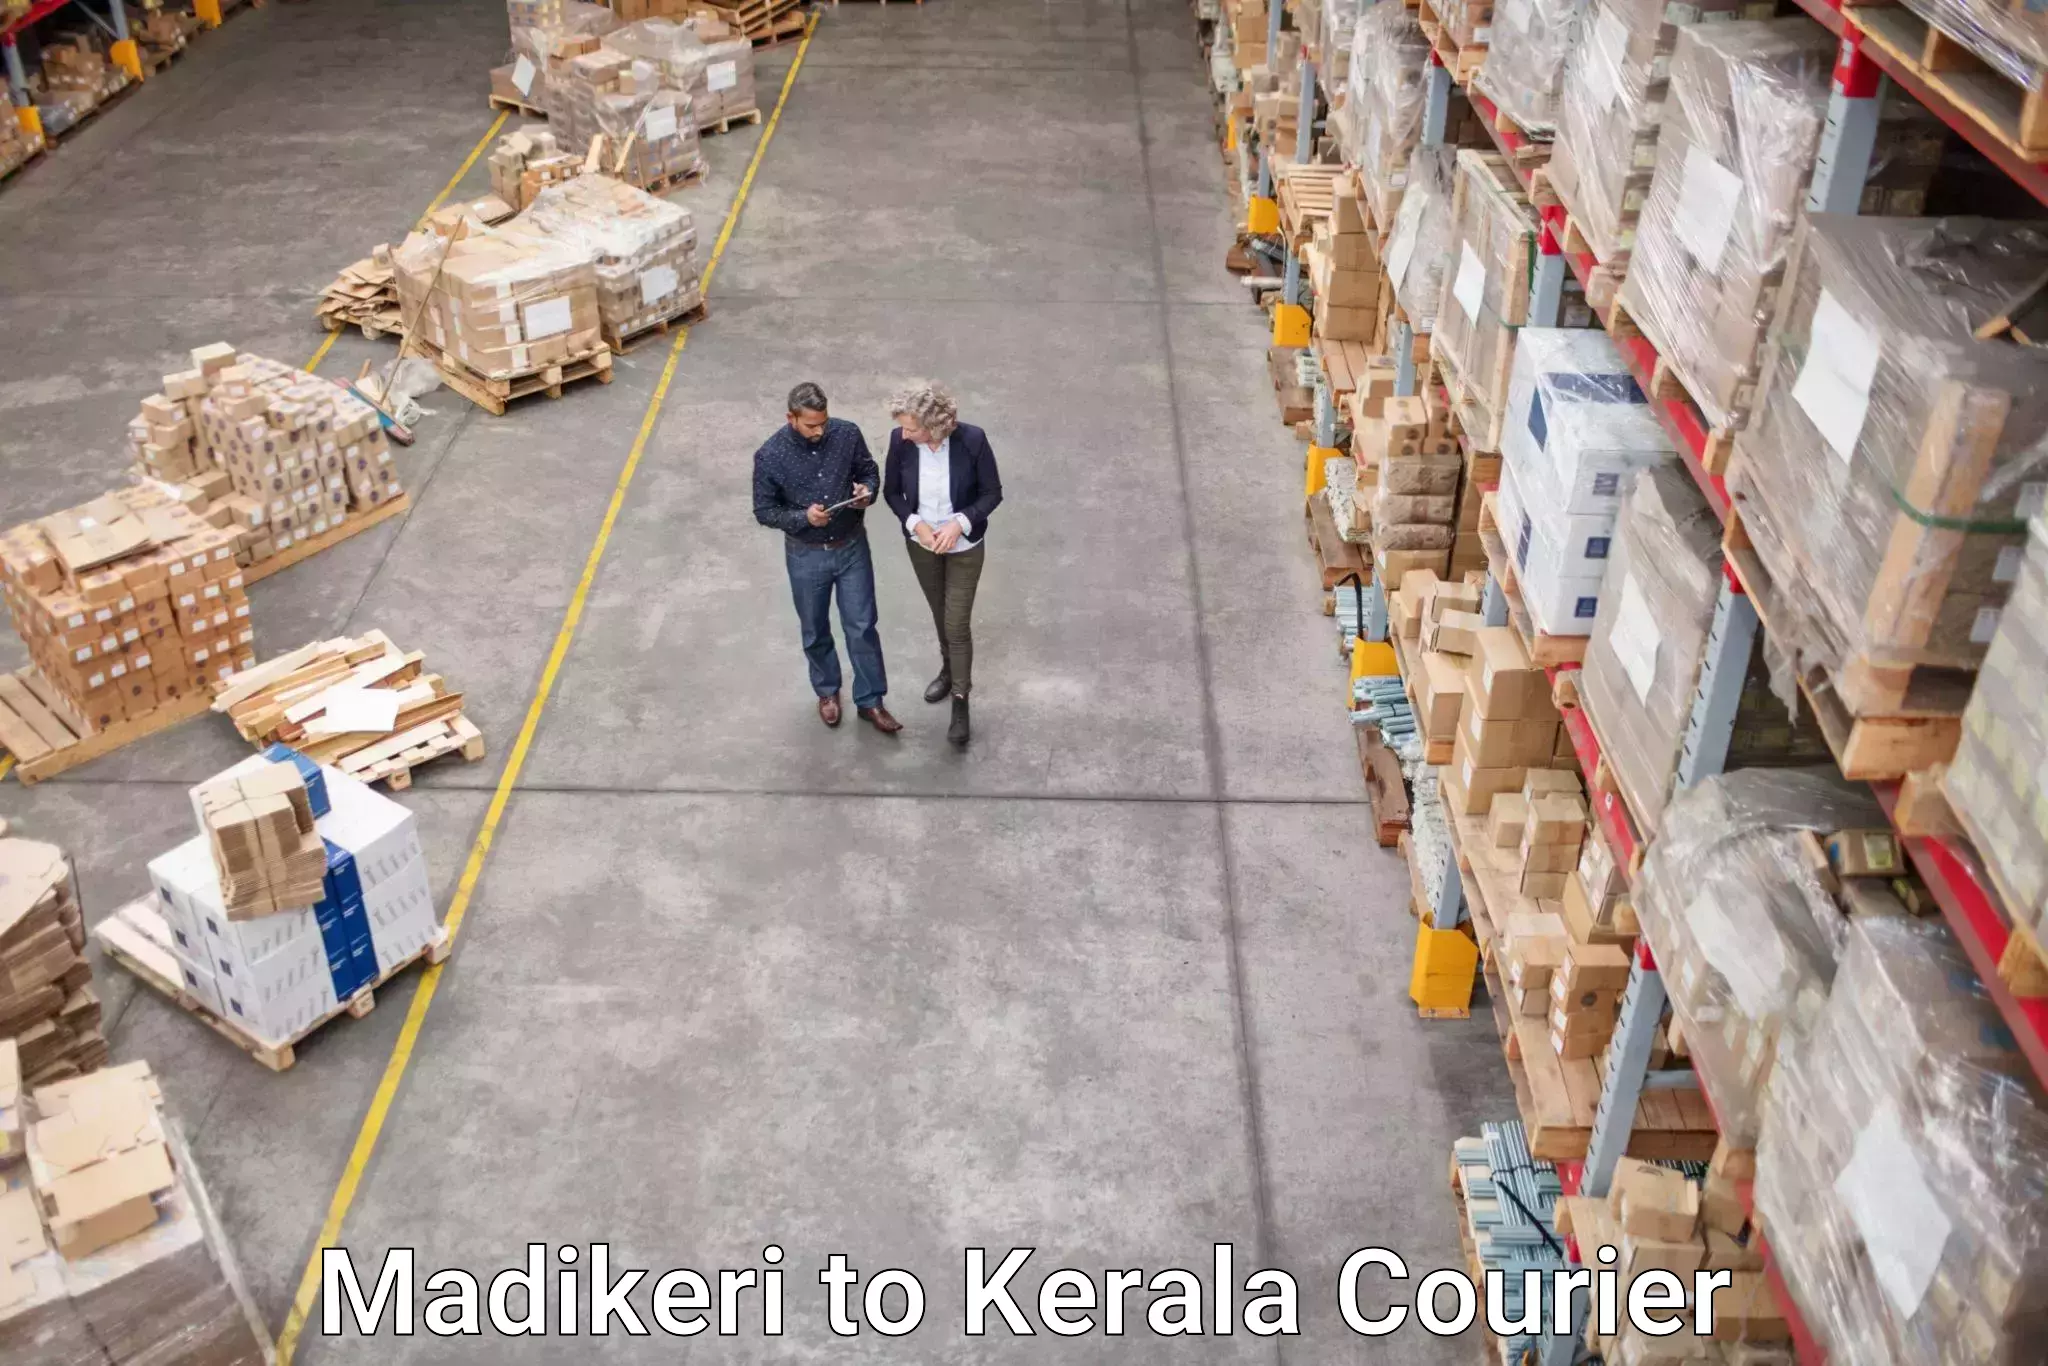 Express package handling Madikeri to Kerala